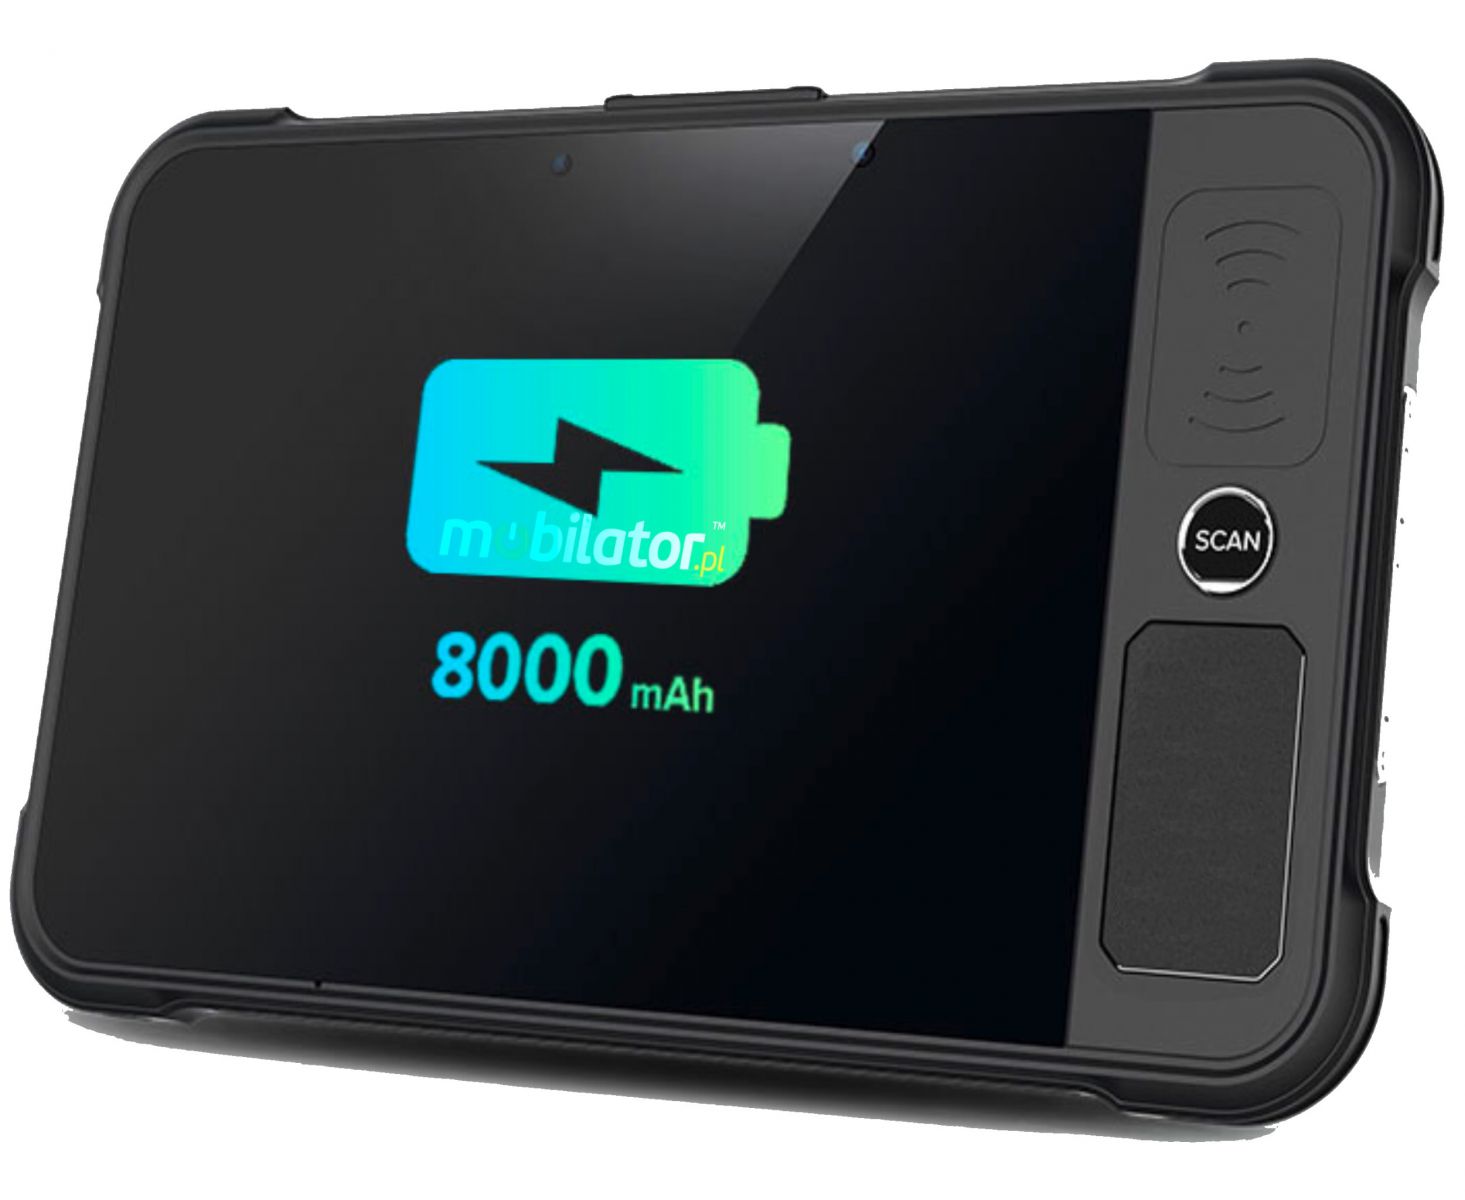 Chainway P80-PE energooszczdny wydajny tablet przemysowy 8000mAh